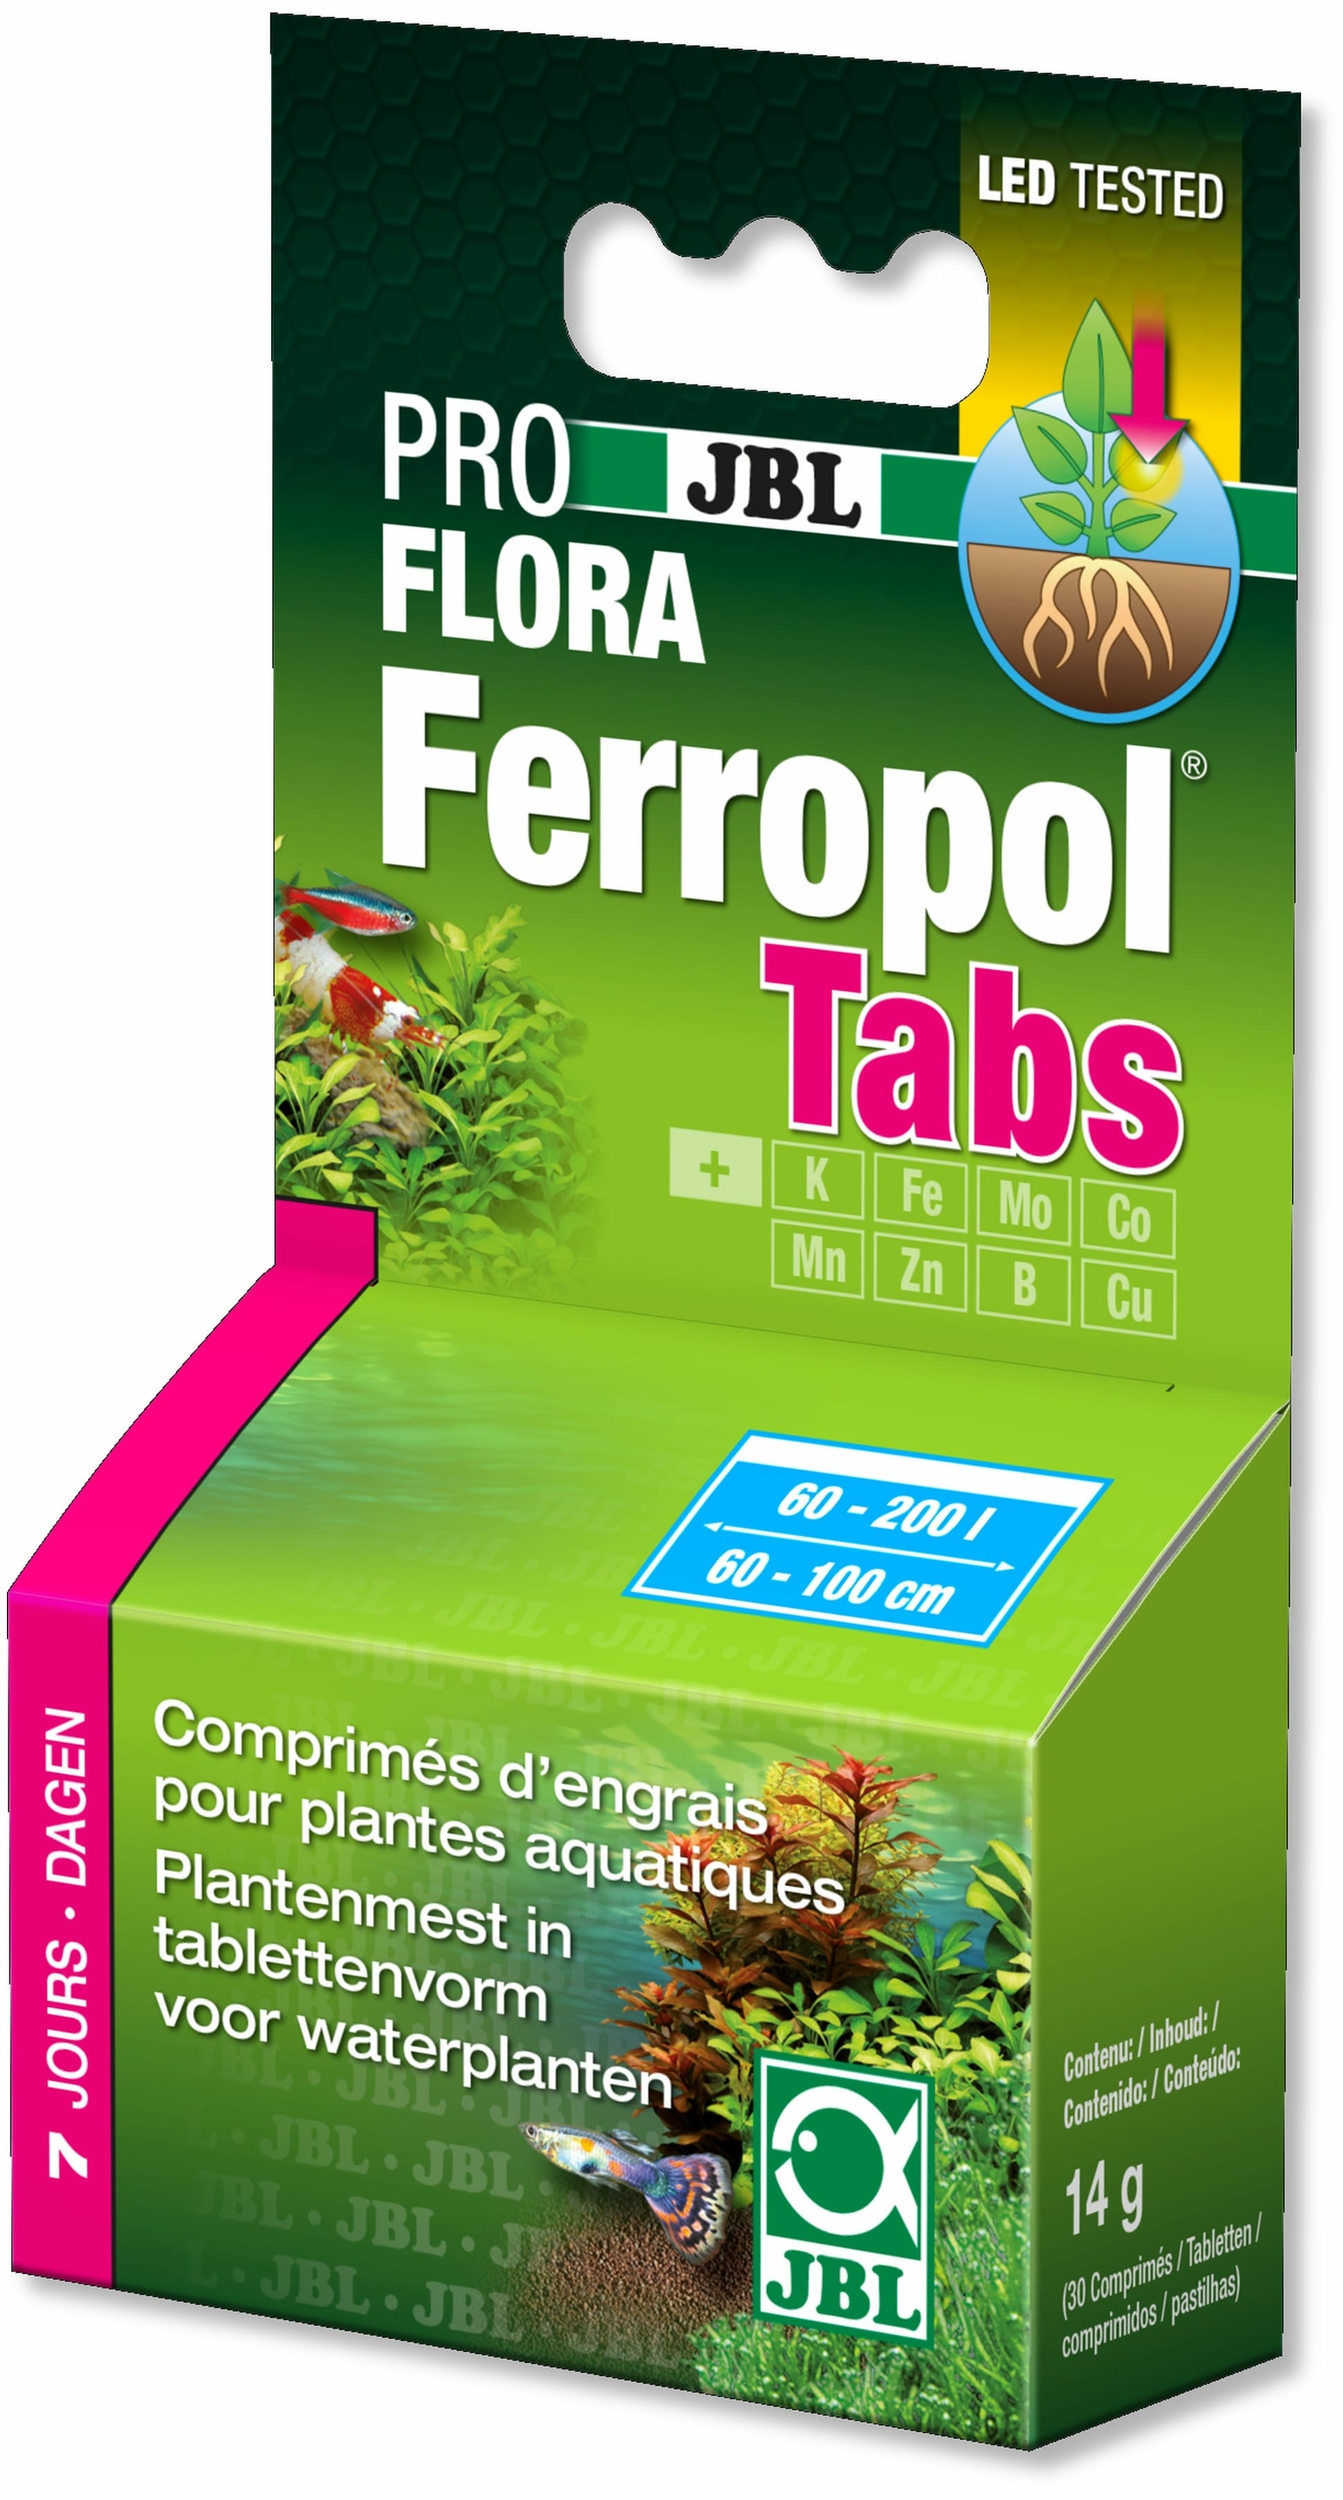 JBL Proflora Ferropol Tabs concentré d\'engrais complet en comprimés à dissoudre dans l\'eau